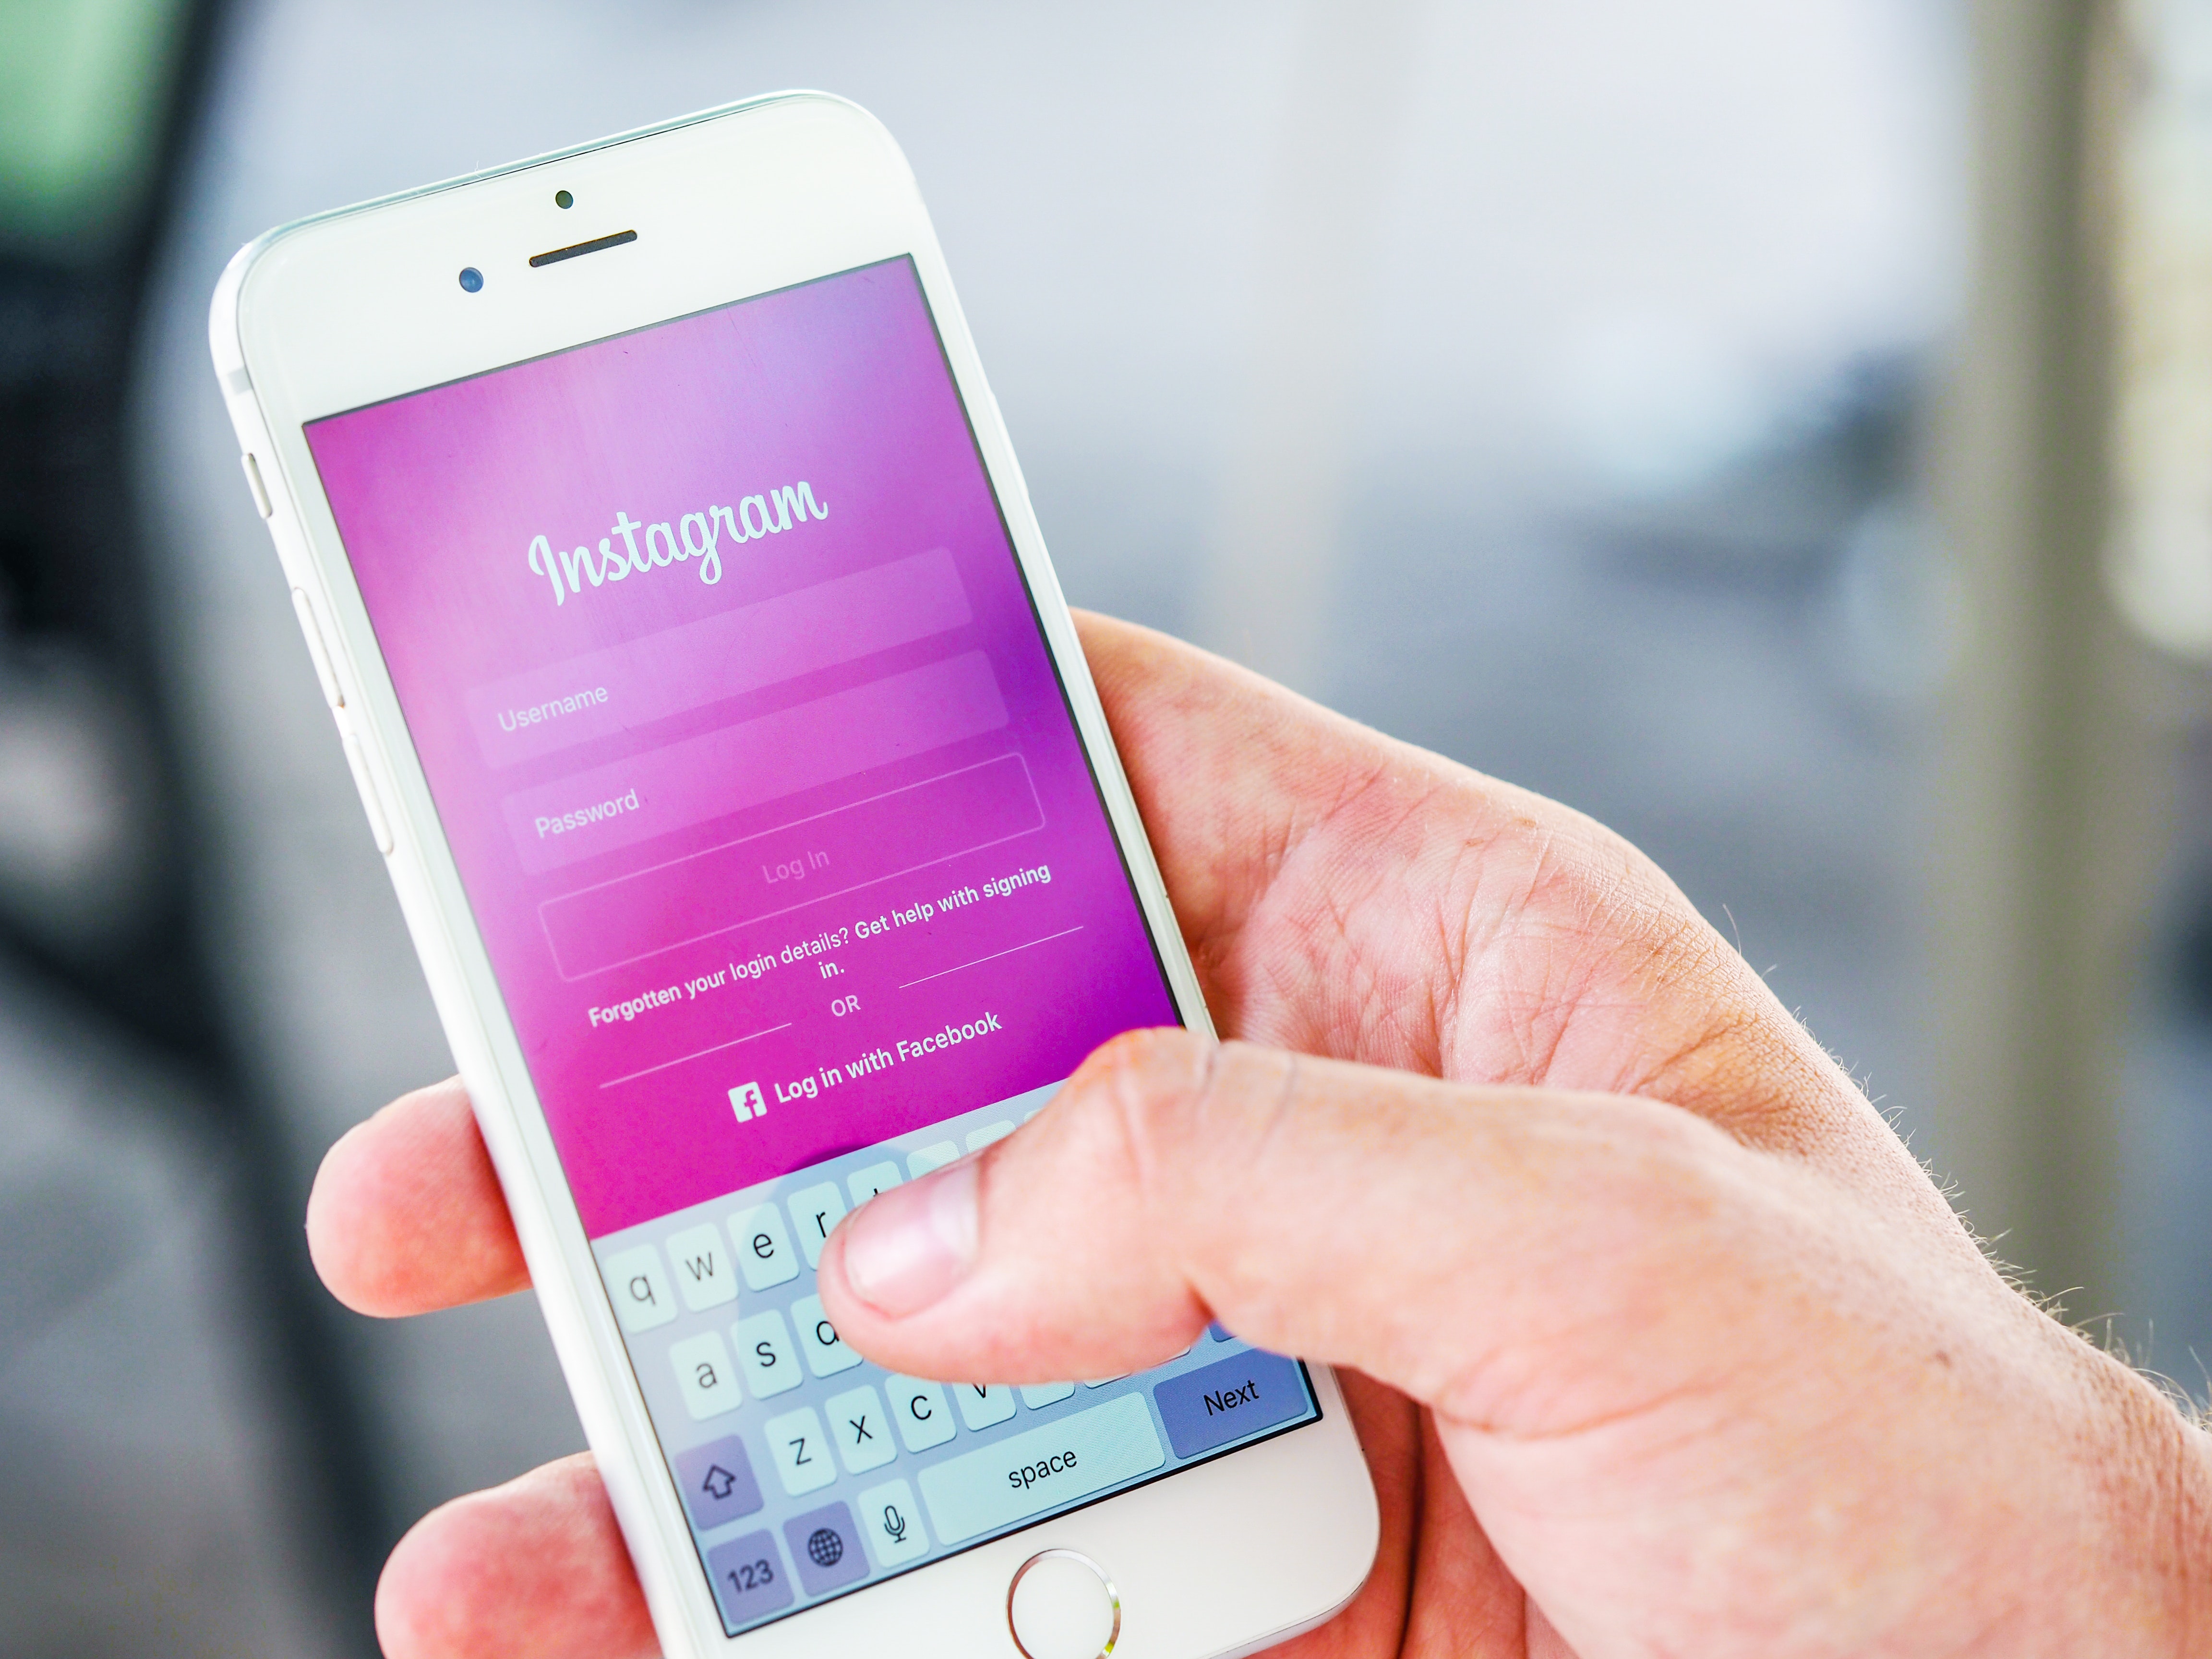 E ardhmja e pasigurtë për Twitter, Instagram vjen me risi të ngjashme